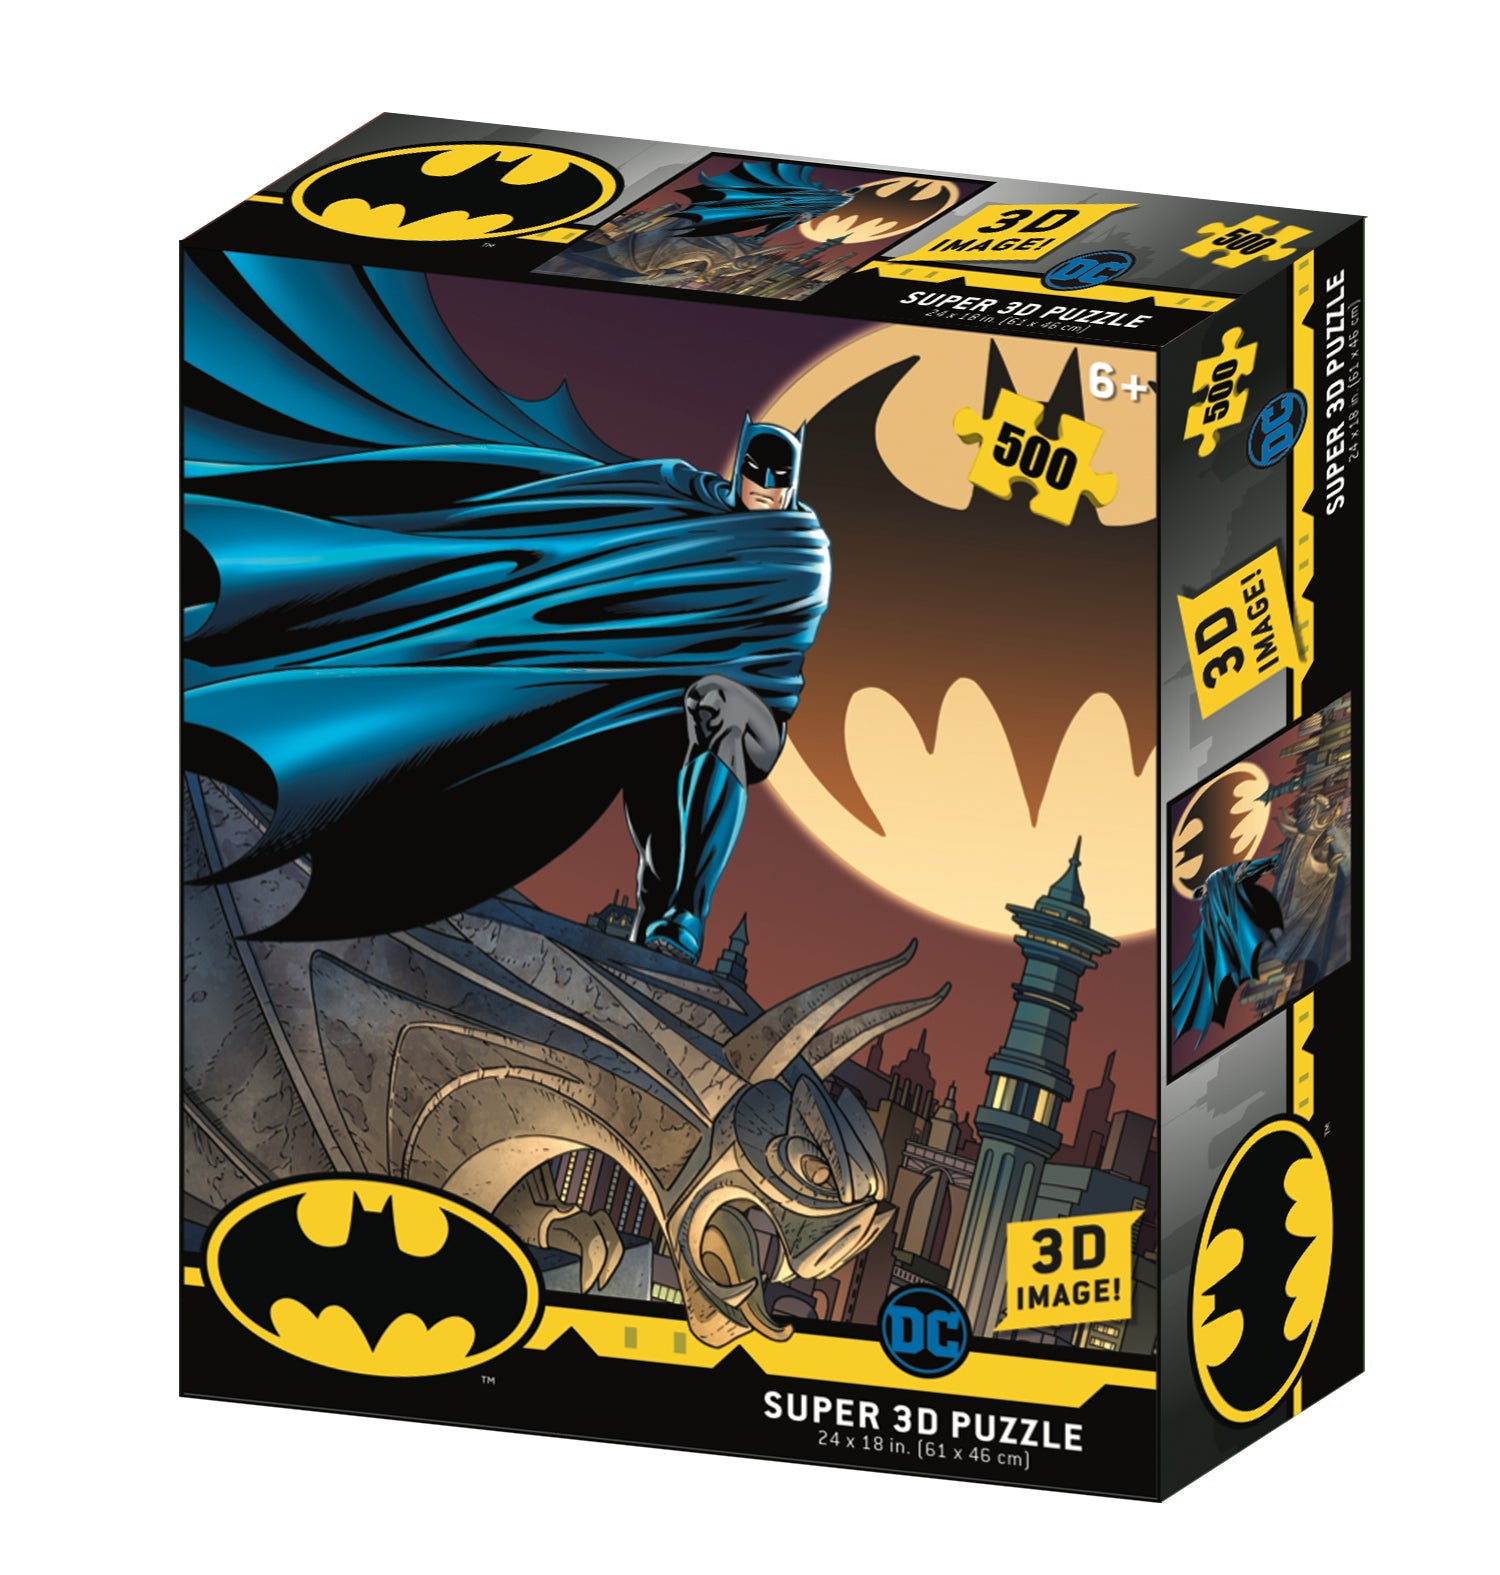 Batman Signal 500 piece 3D Jigsaw Puzzle - Chester Model Centre